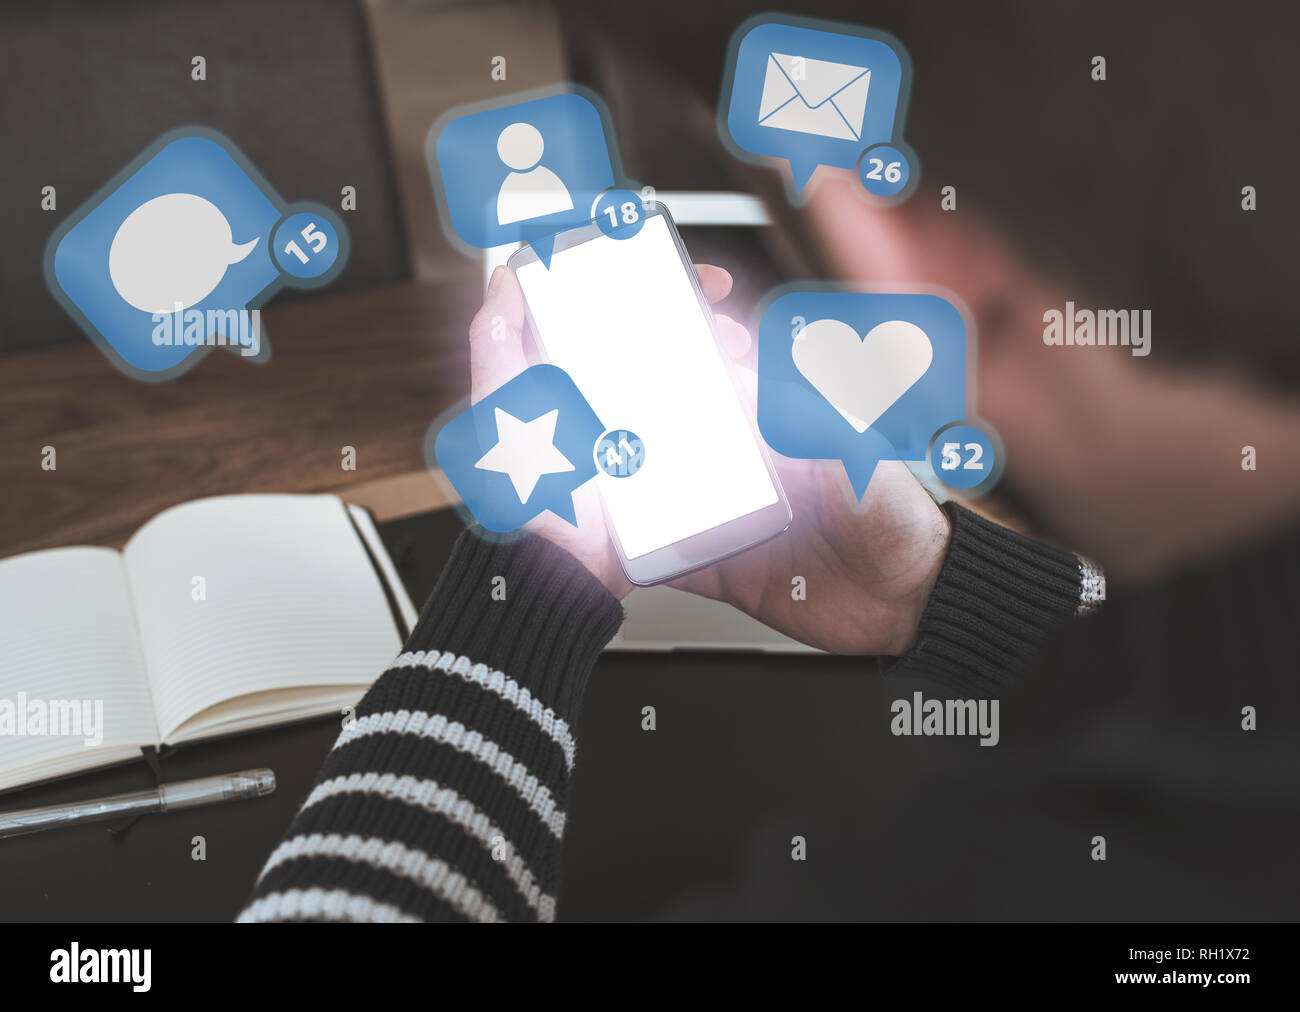 Uomo che utilizza smartphone con i social media le icone di notifica in bilico sopra lo schermo brillante Foto Stock